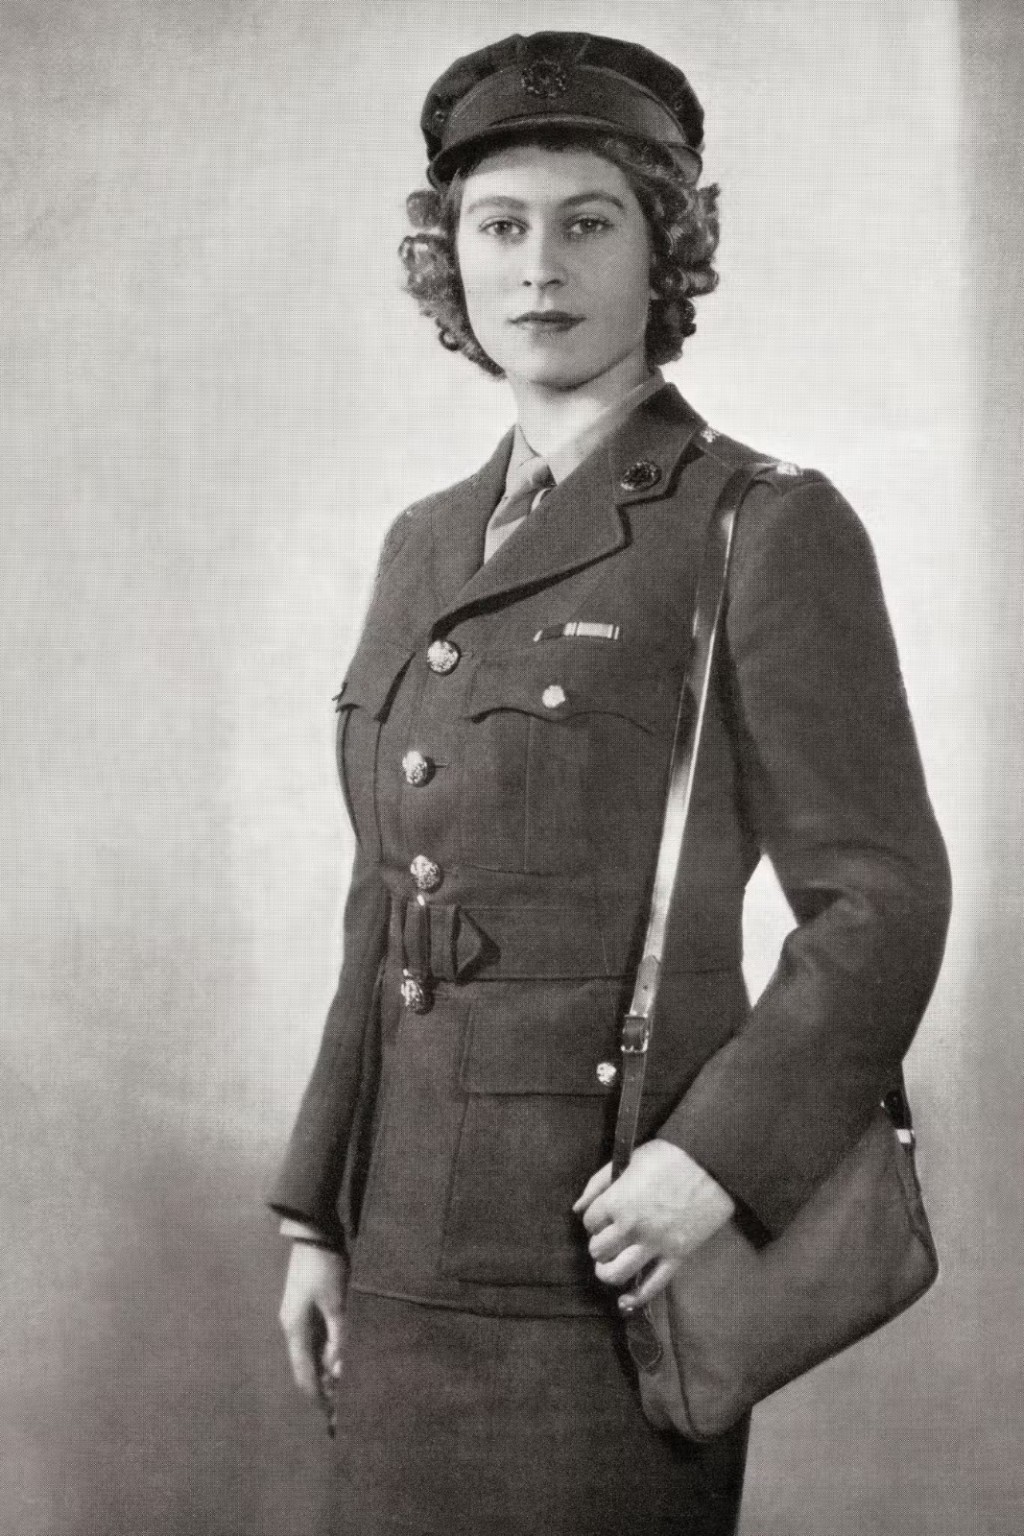 英女皇是皇室中唯一進入武裝部隊的女性成員。網上圖片